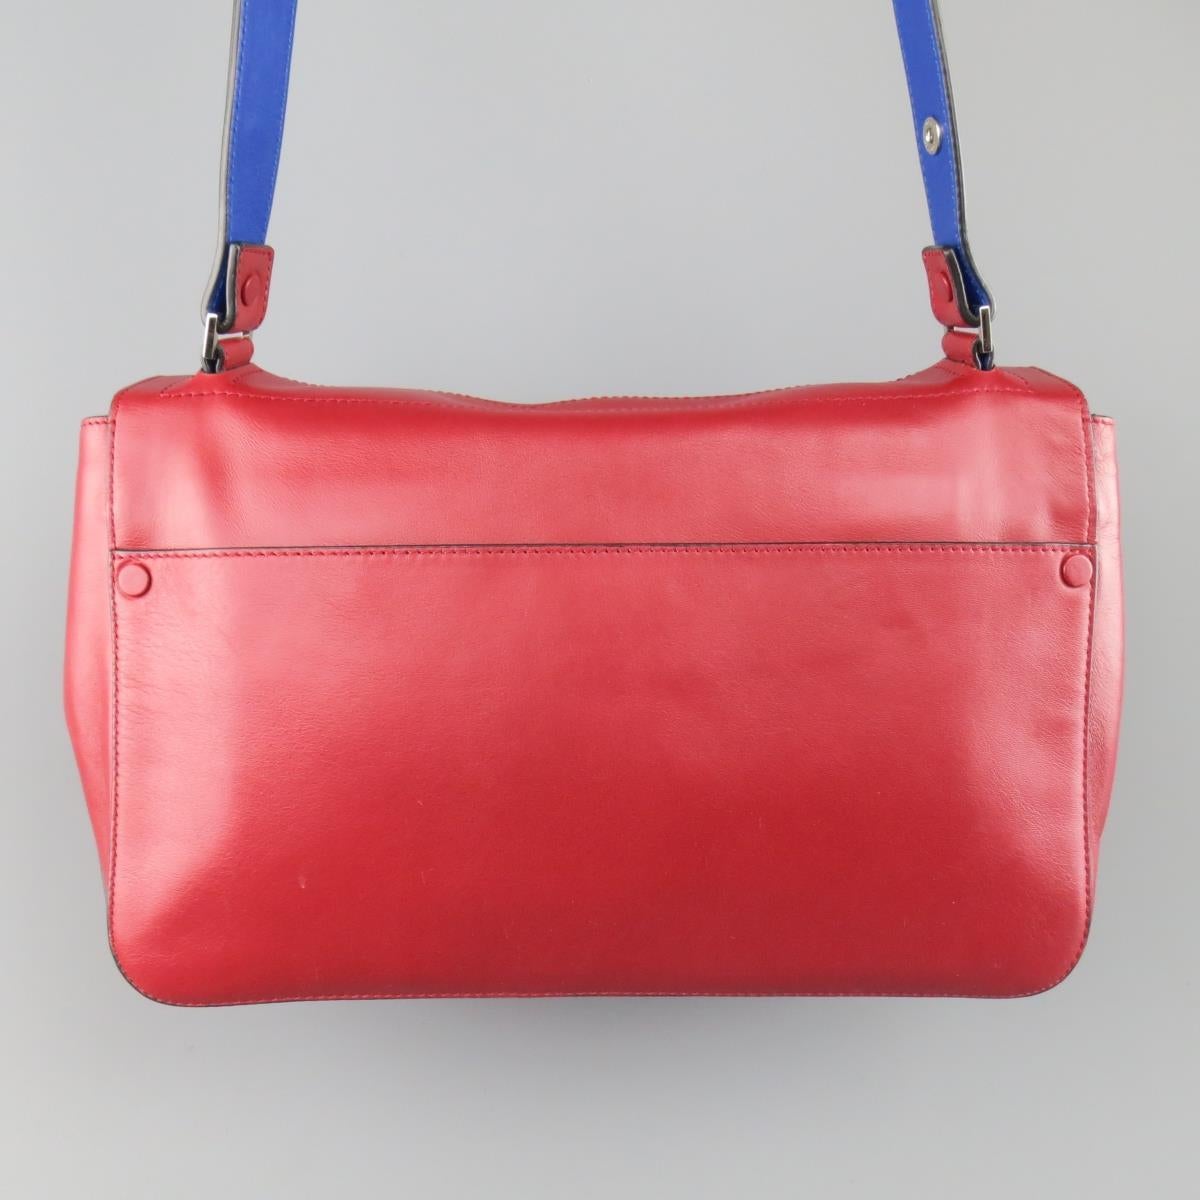 PROENZA SCHOULER Red & Blue Color Block Leather Shoulder Bag 3